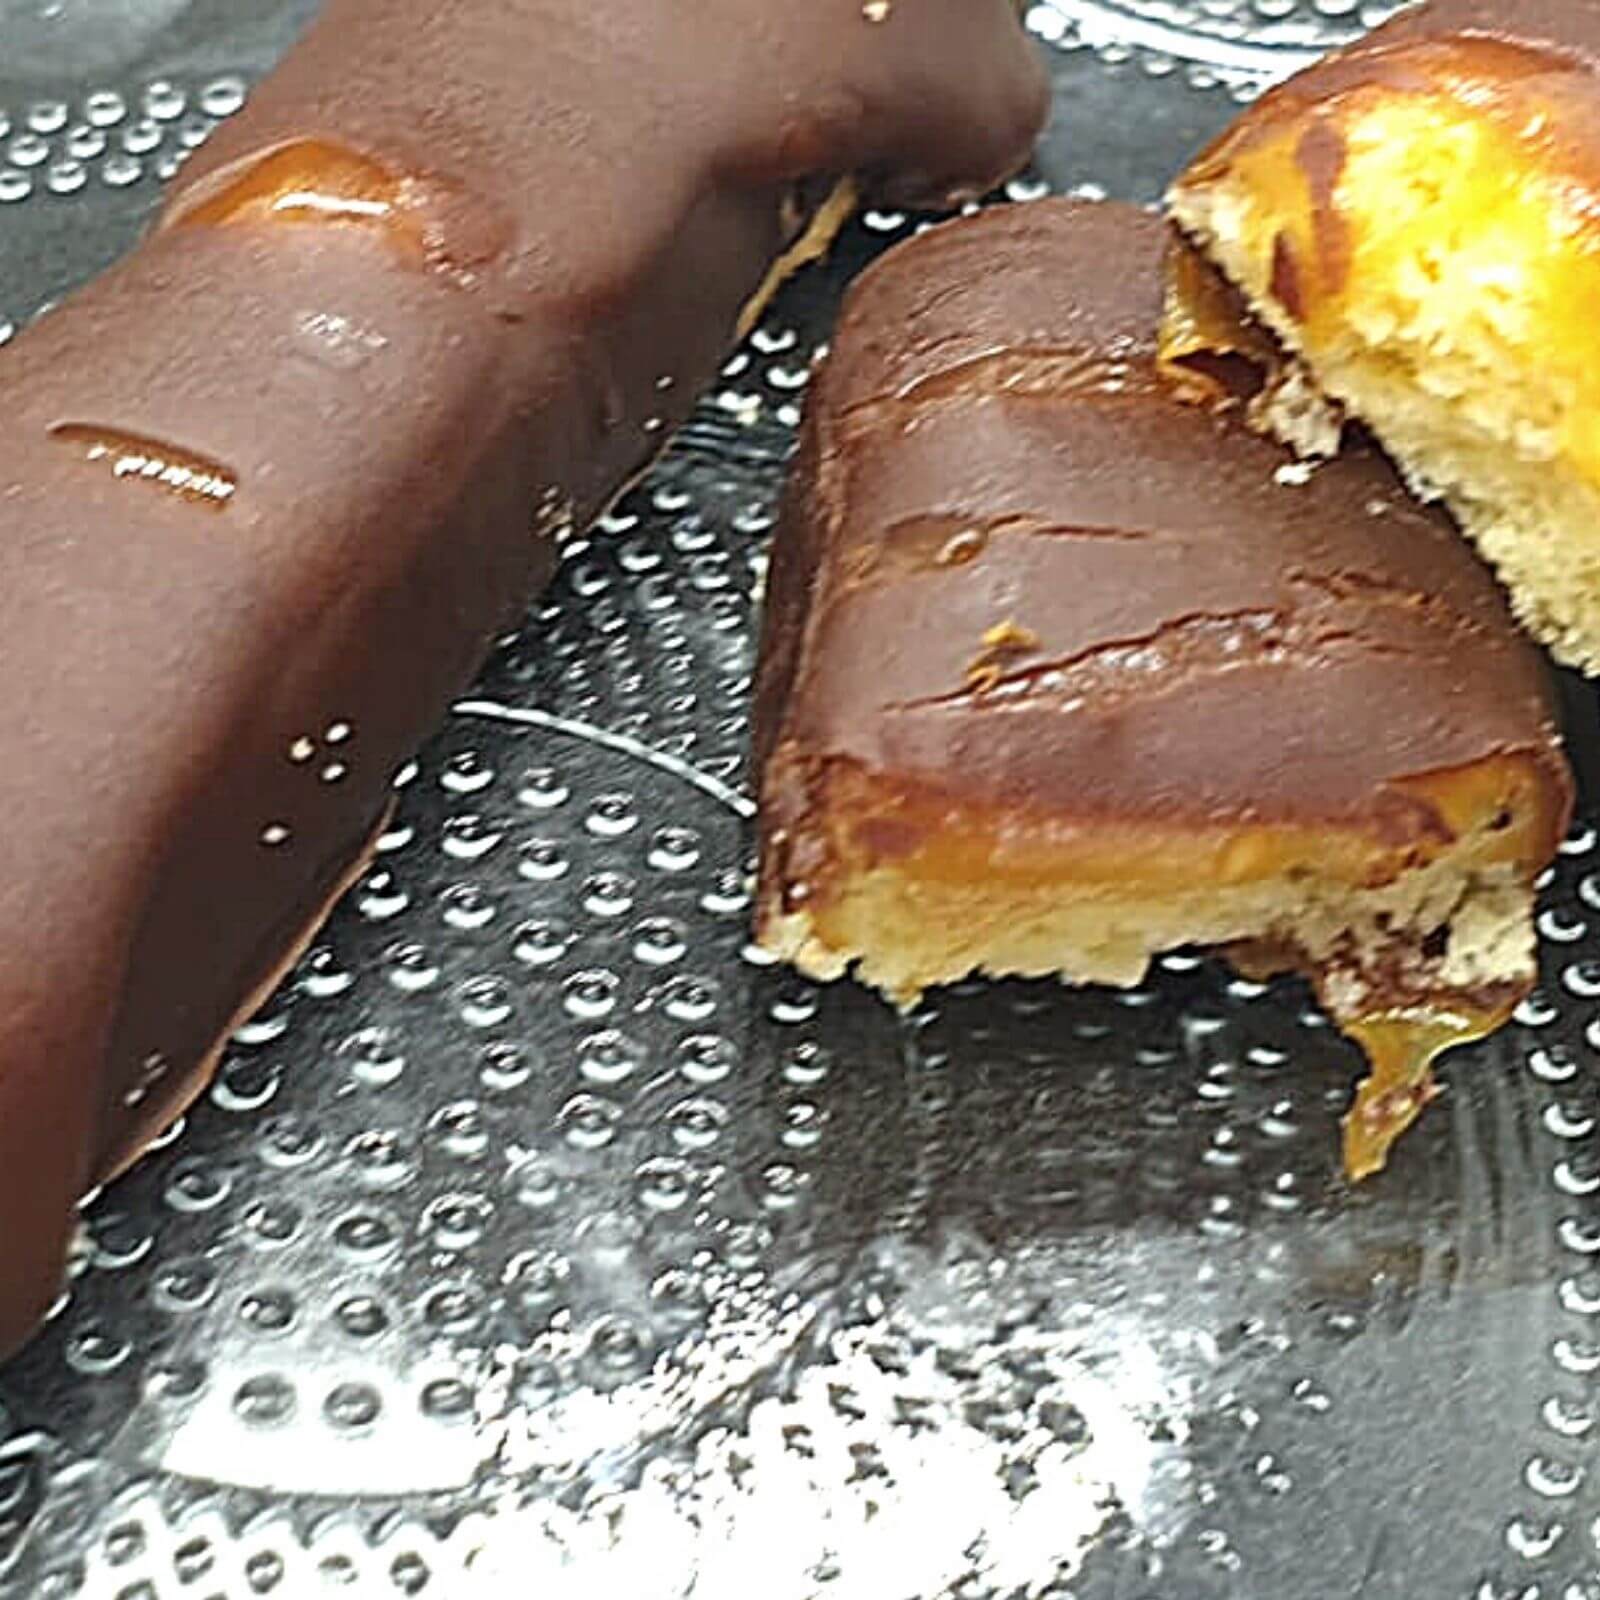 טוויקס ביתי ללא גלוטן הוא טעים, יש לו שכבת קרמל מדויקת, עוגייה פריכה ונימוחה, ציפוי שוקולד מטמטם.